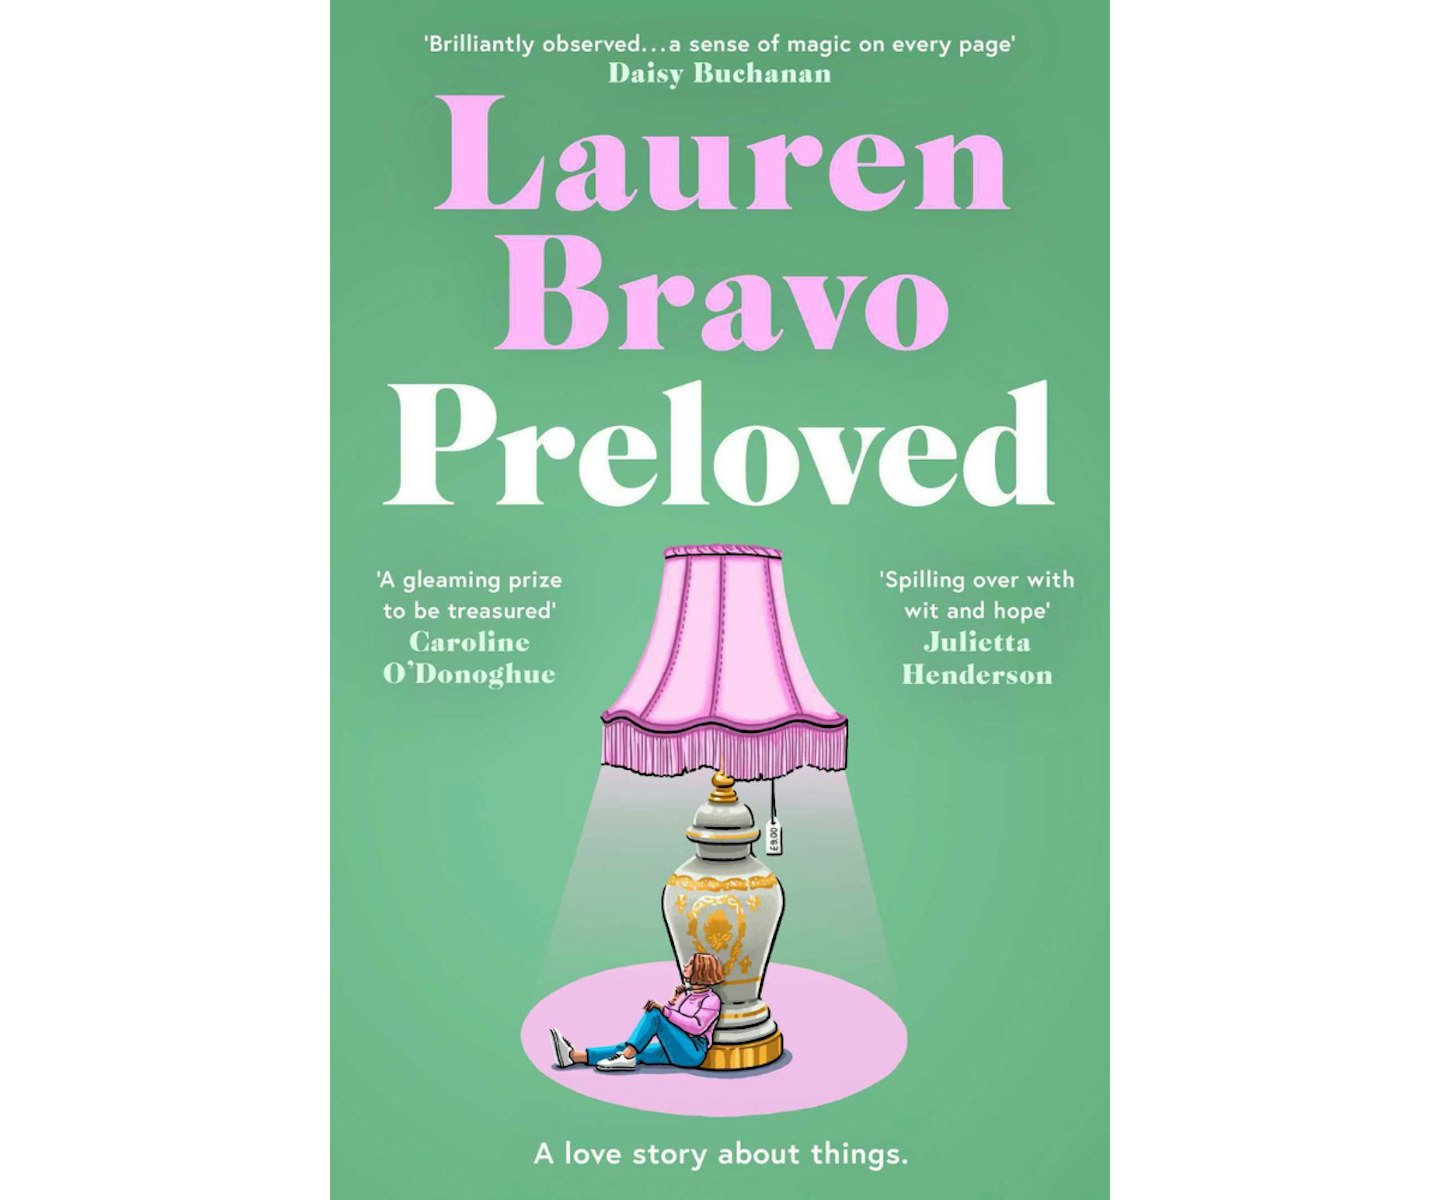 Preloved by Lauren Bravo